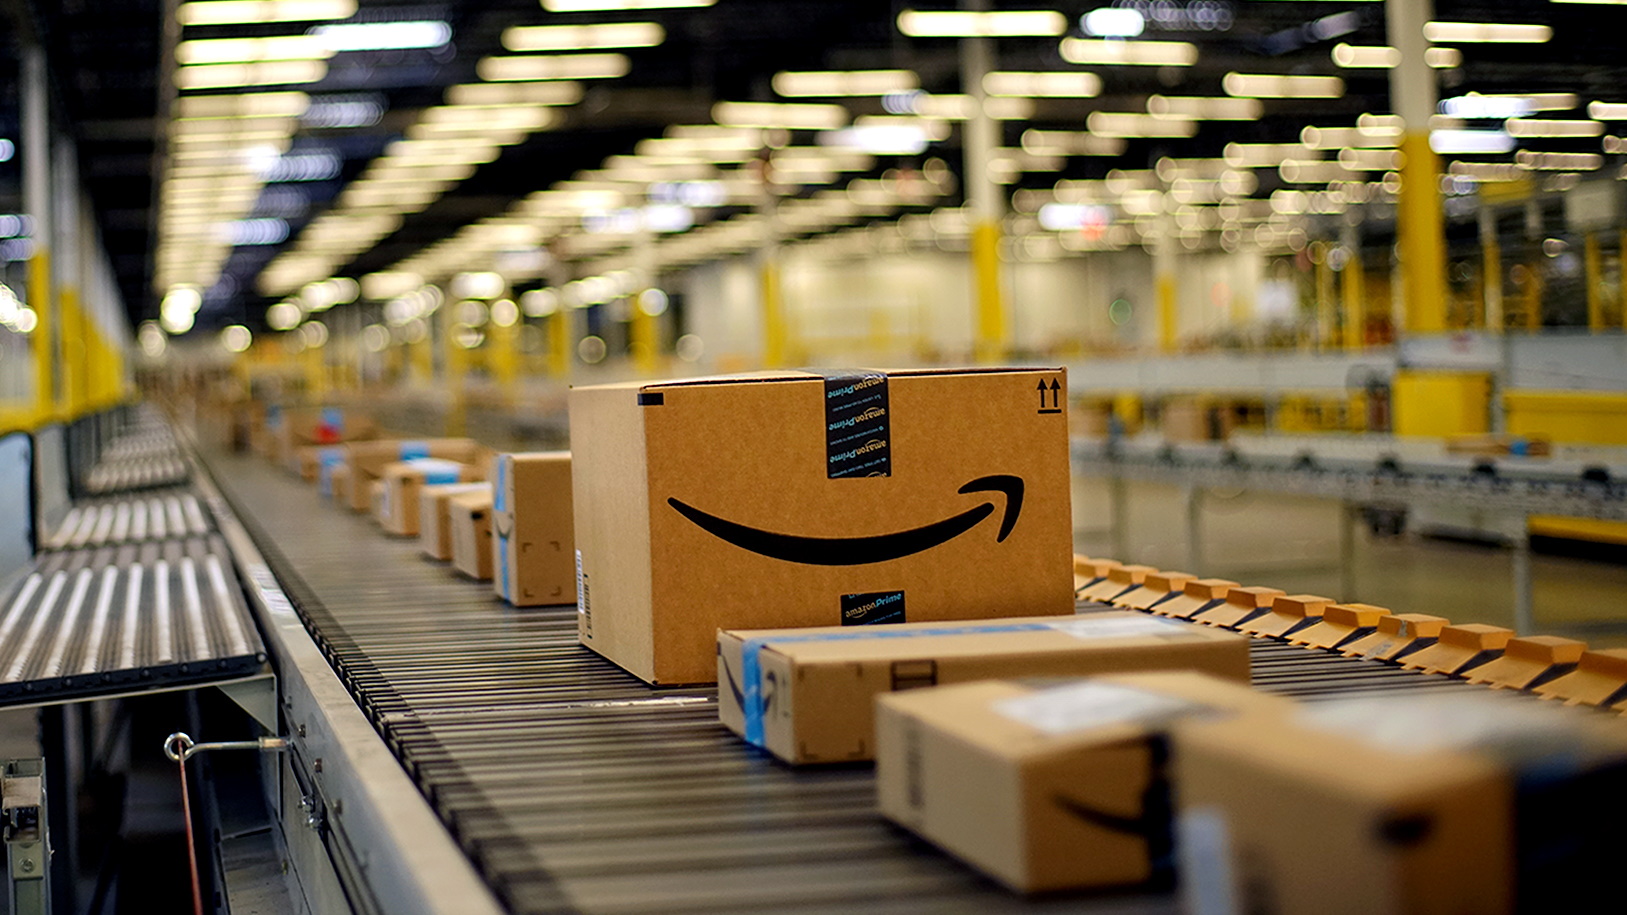 Amazon Buy Box: o que é e como ganhar destaque na plataforma?